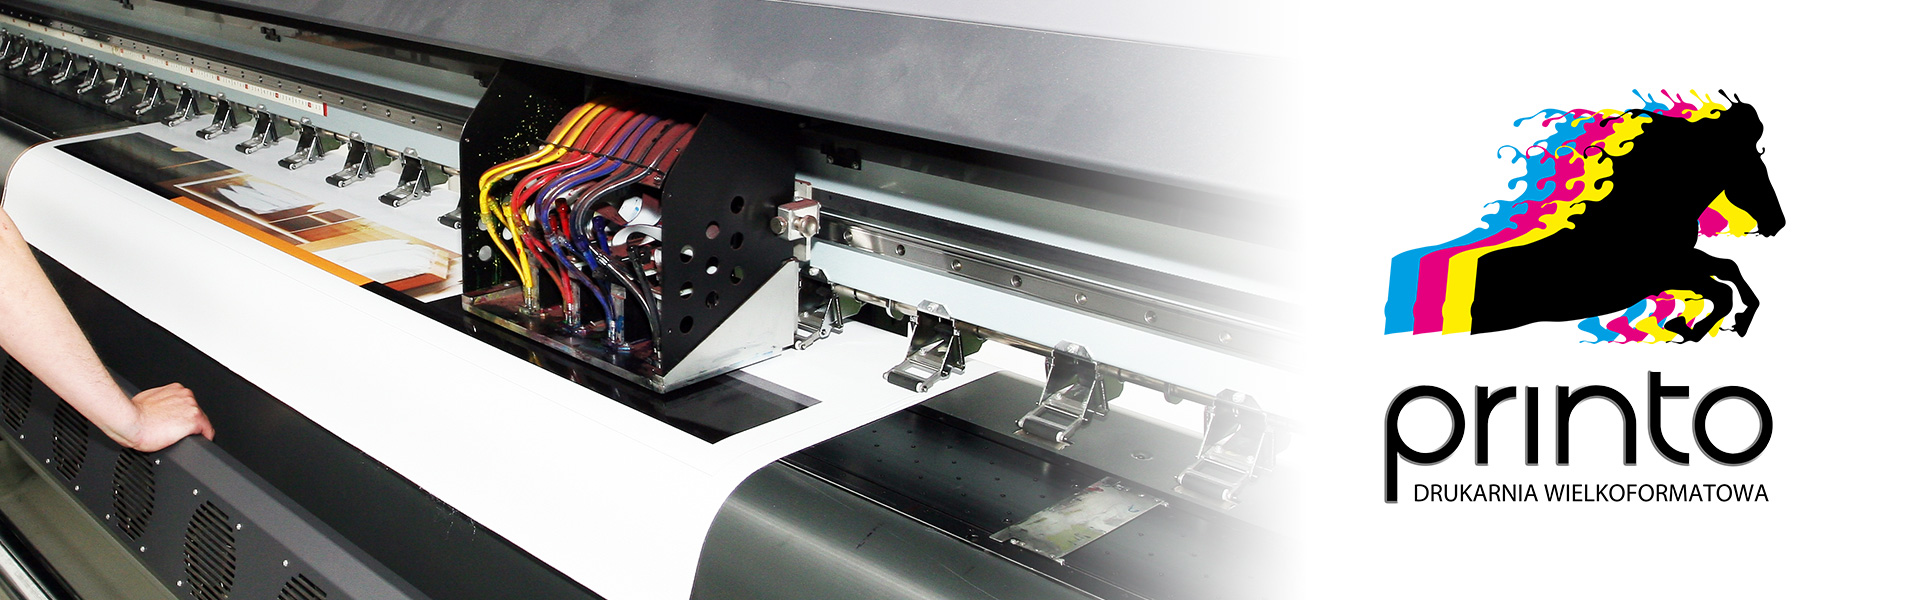 printo - drukarnia wielkoformatowa